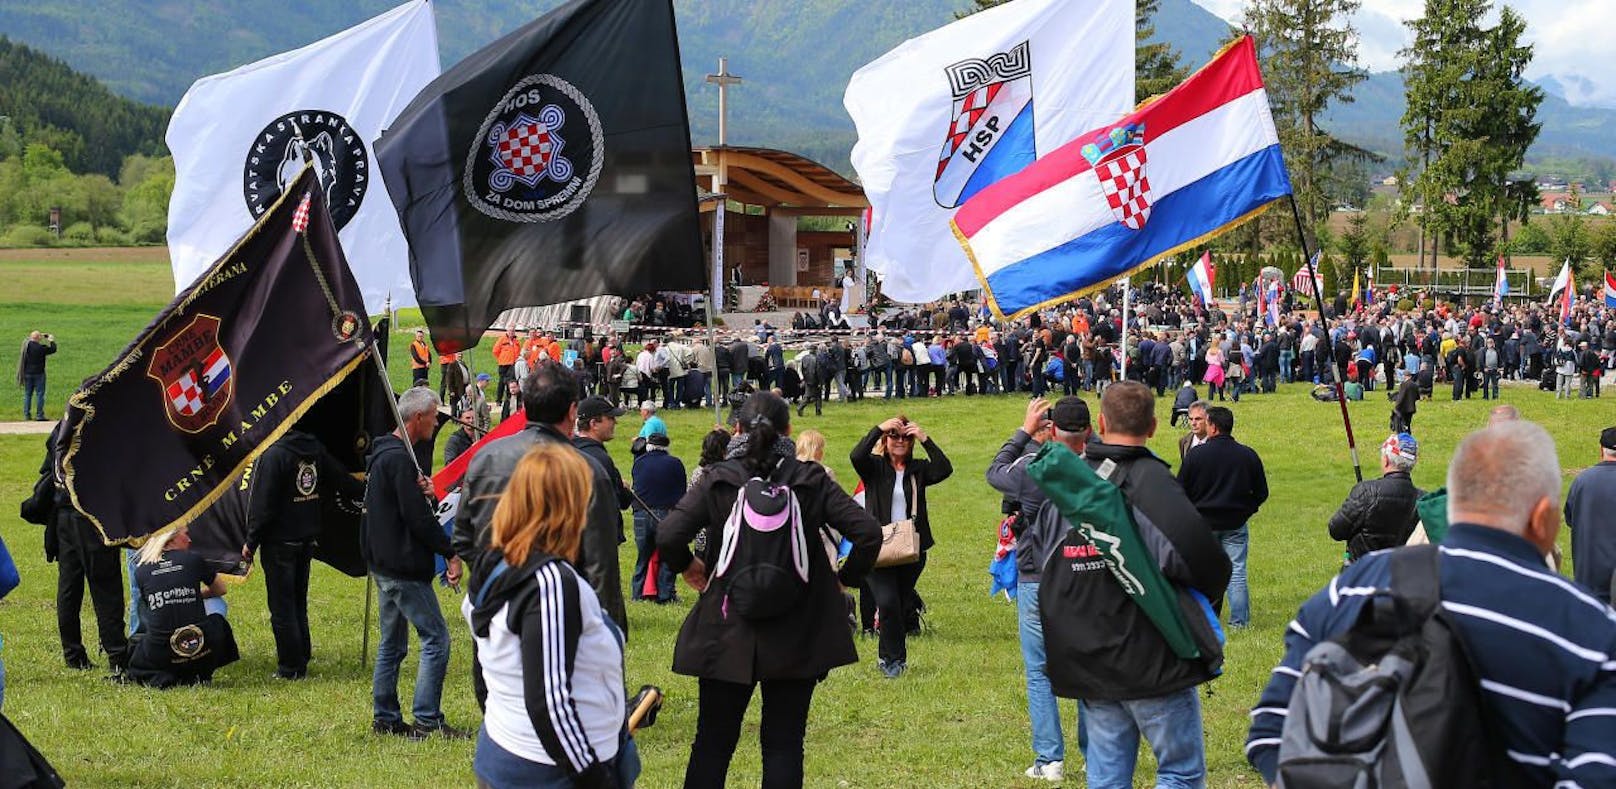 Bei Treffen in Bleiburg, Kärnten, wird des Massakers an mit dem Nazi-Regime verbündeten Ustascha-Kämpfern durch jugoslawische Partisanen gedacht. Dort versammeln sich alljährlich Rechtsextreme aus ganz Europa. Es werden reichlich Fahnen und Symbole der faschistischen kroatischen Ustascha gezeigt. Seit längerem wird ein Verbot gefordert.